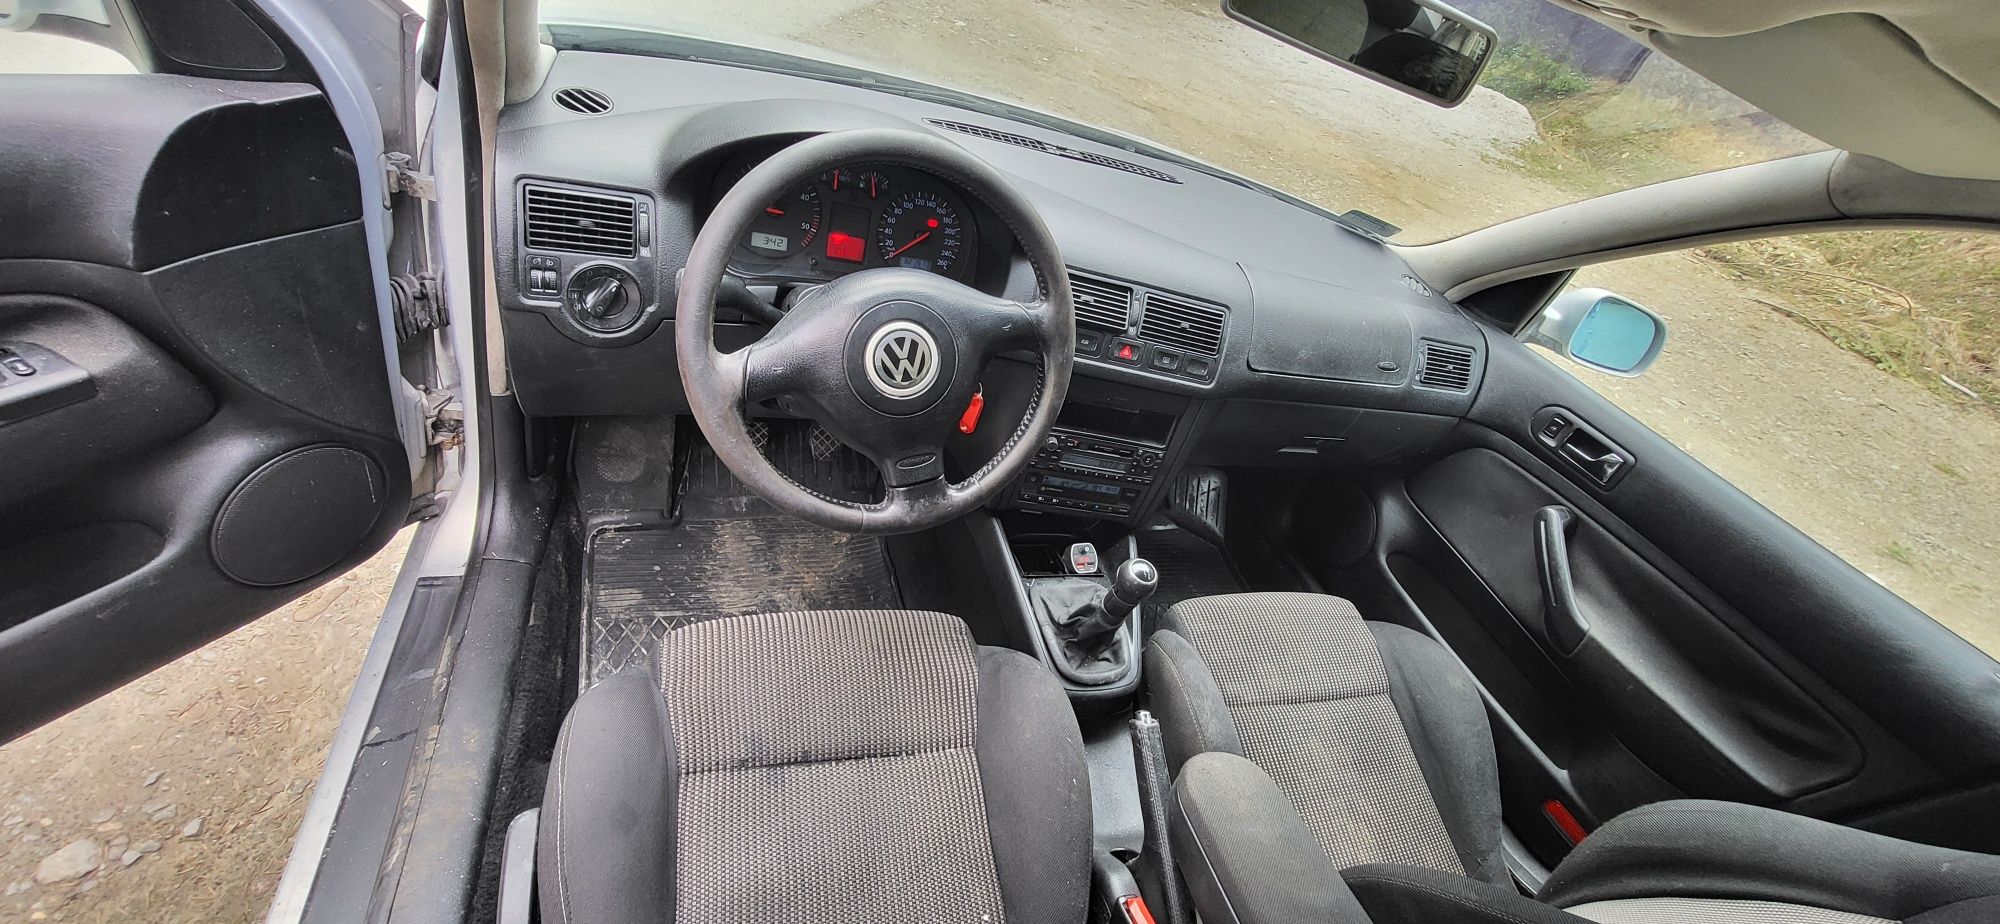 Volkswagen Golf IV 1.9tdi 115km, 6biegow, klimatyzacja.